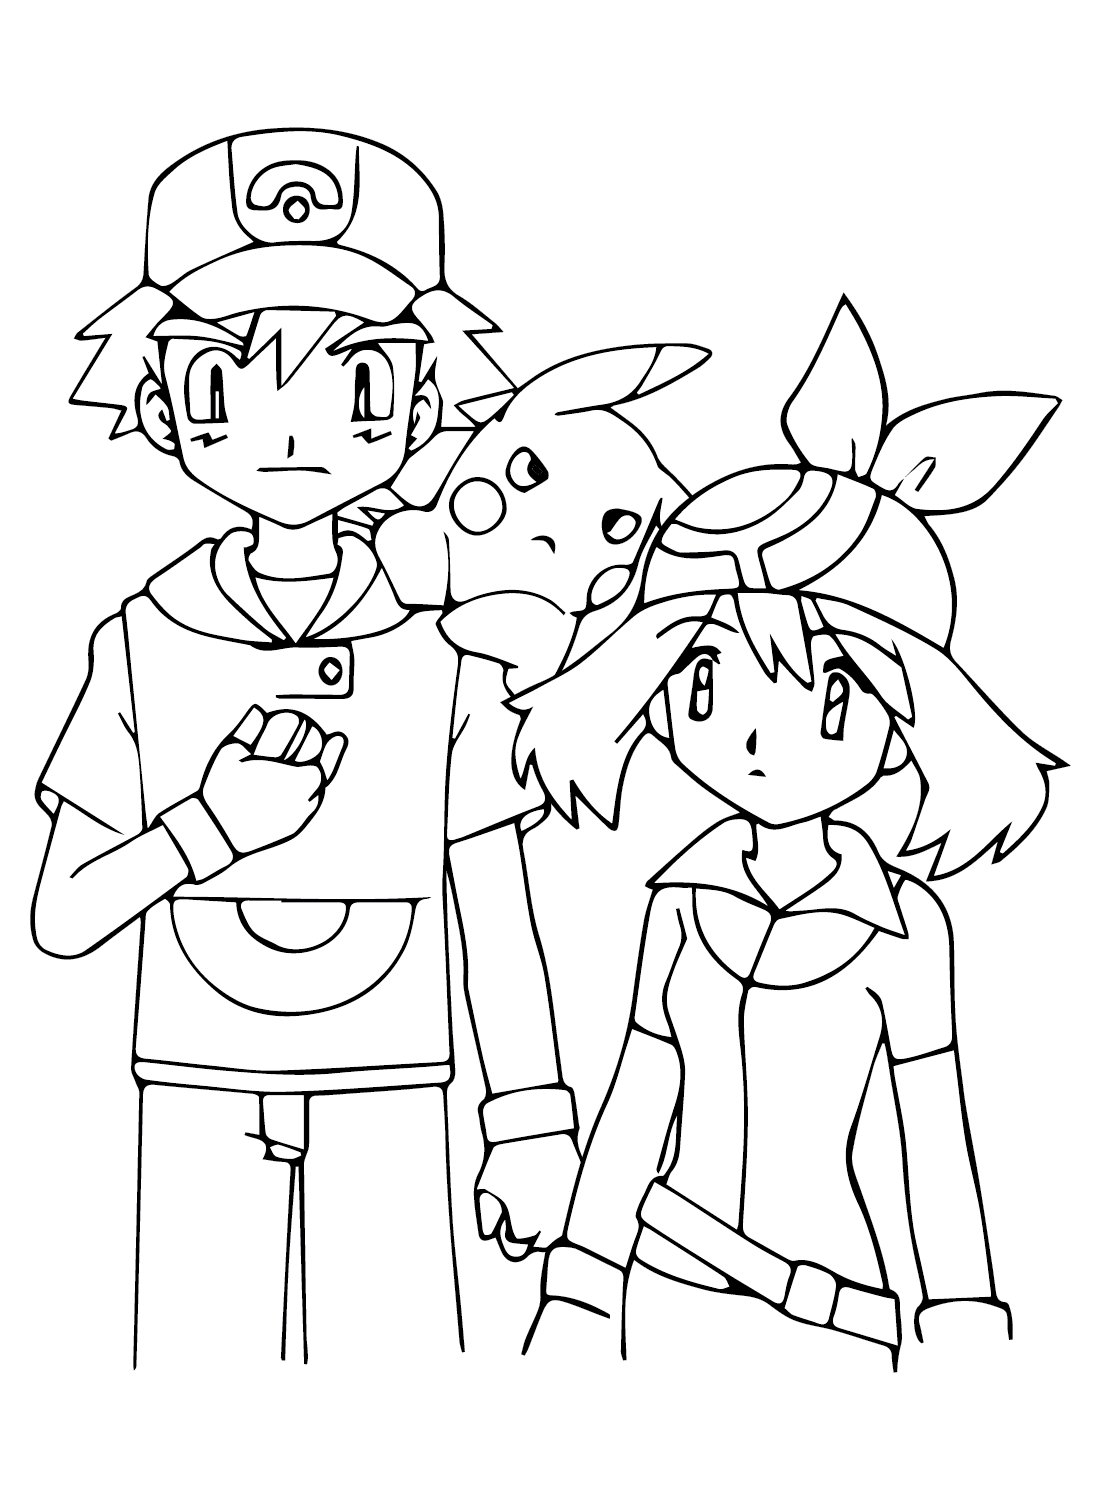 Página para colorir de May e Ash de May Pokémon